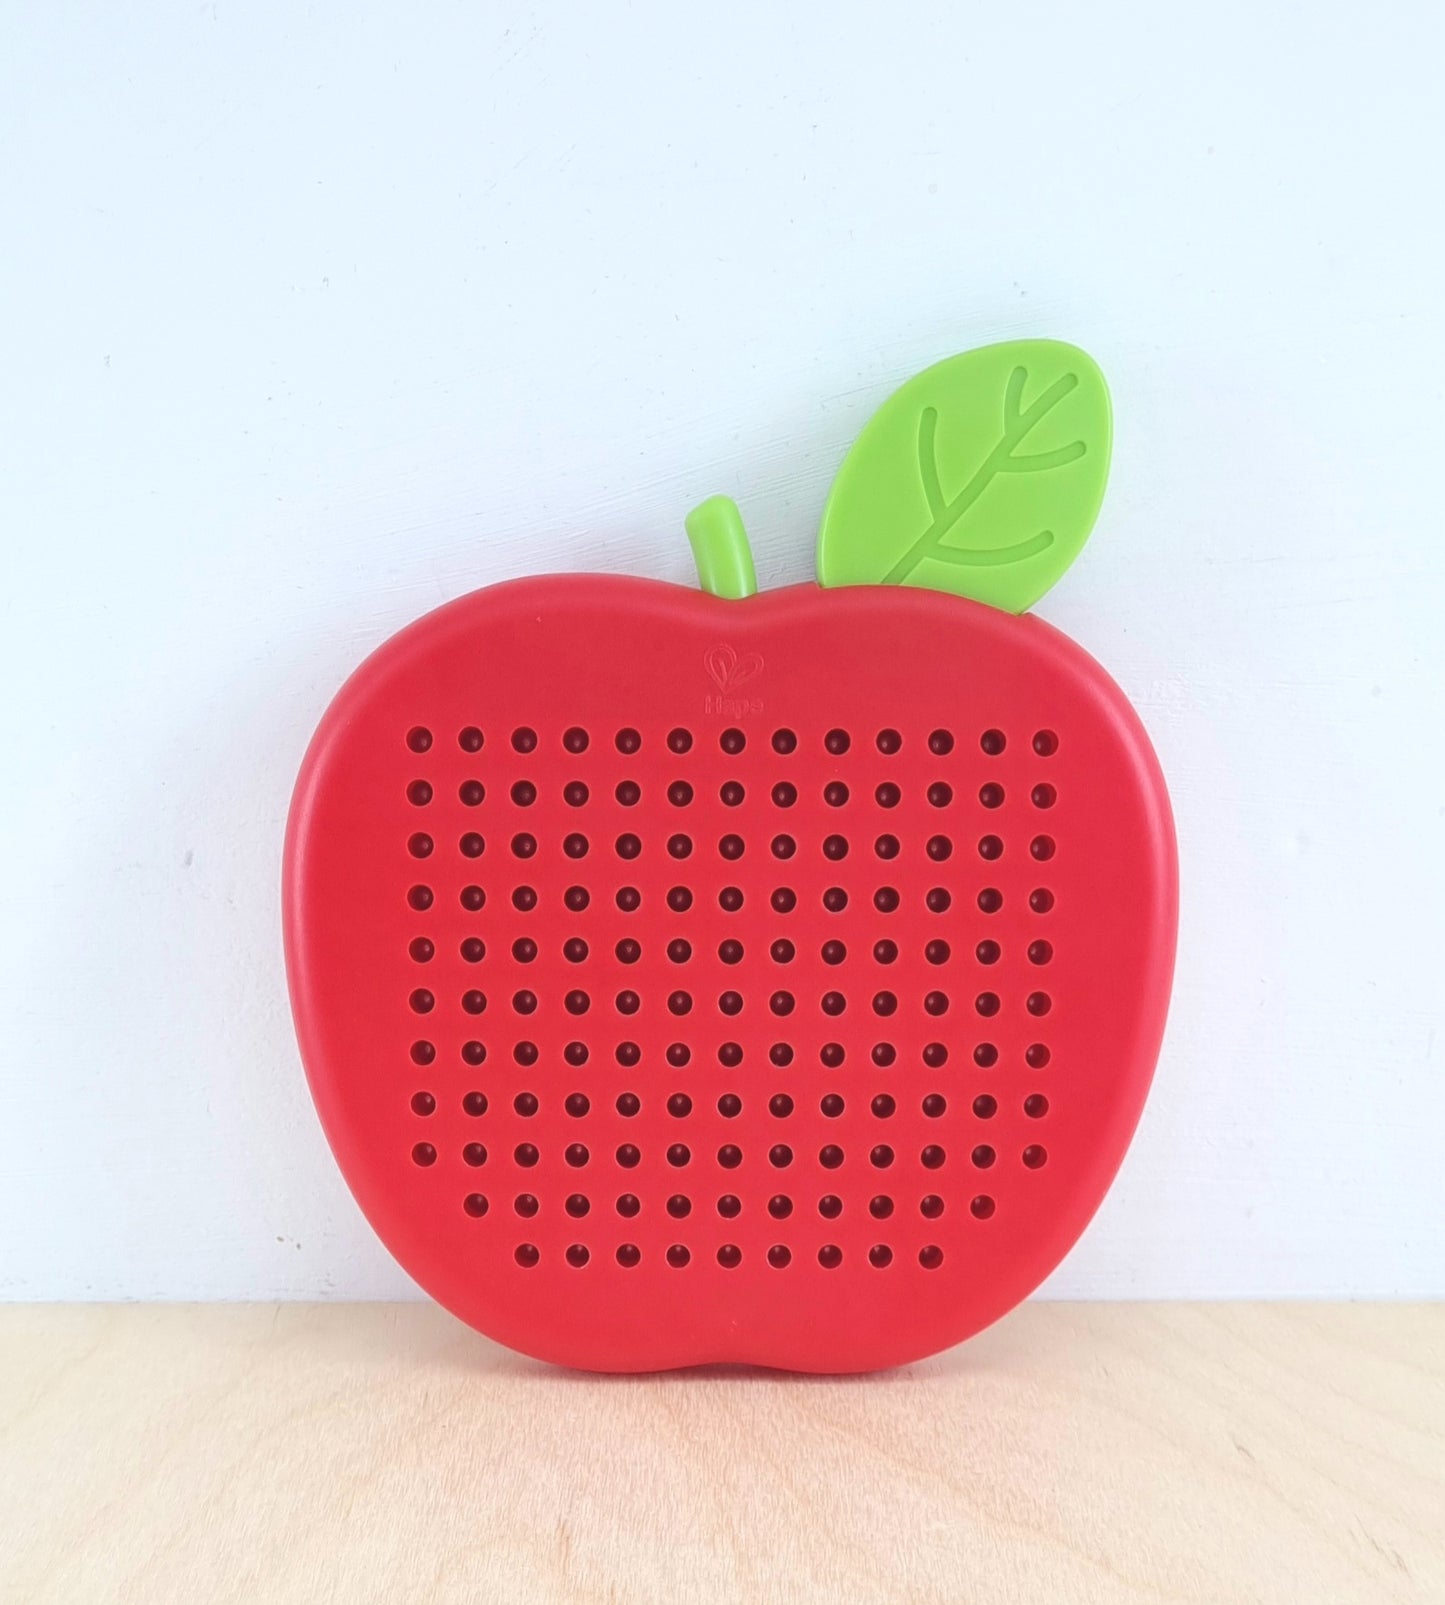 Magnetic apple board